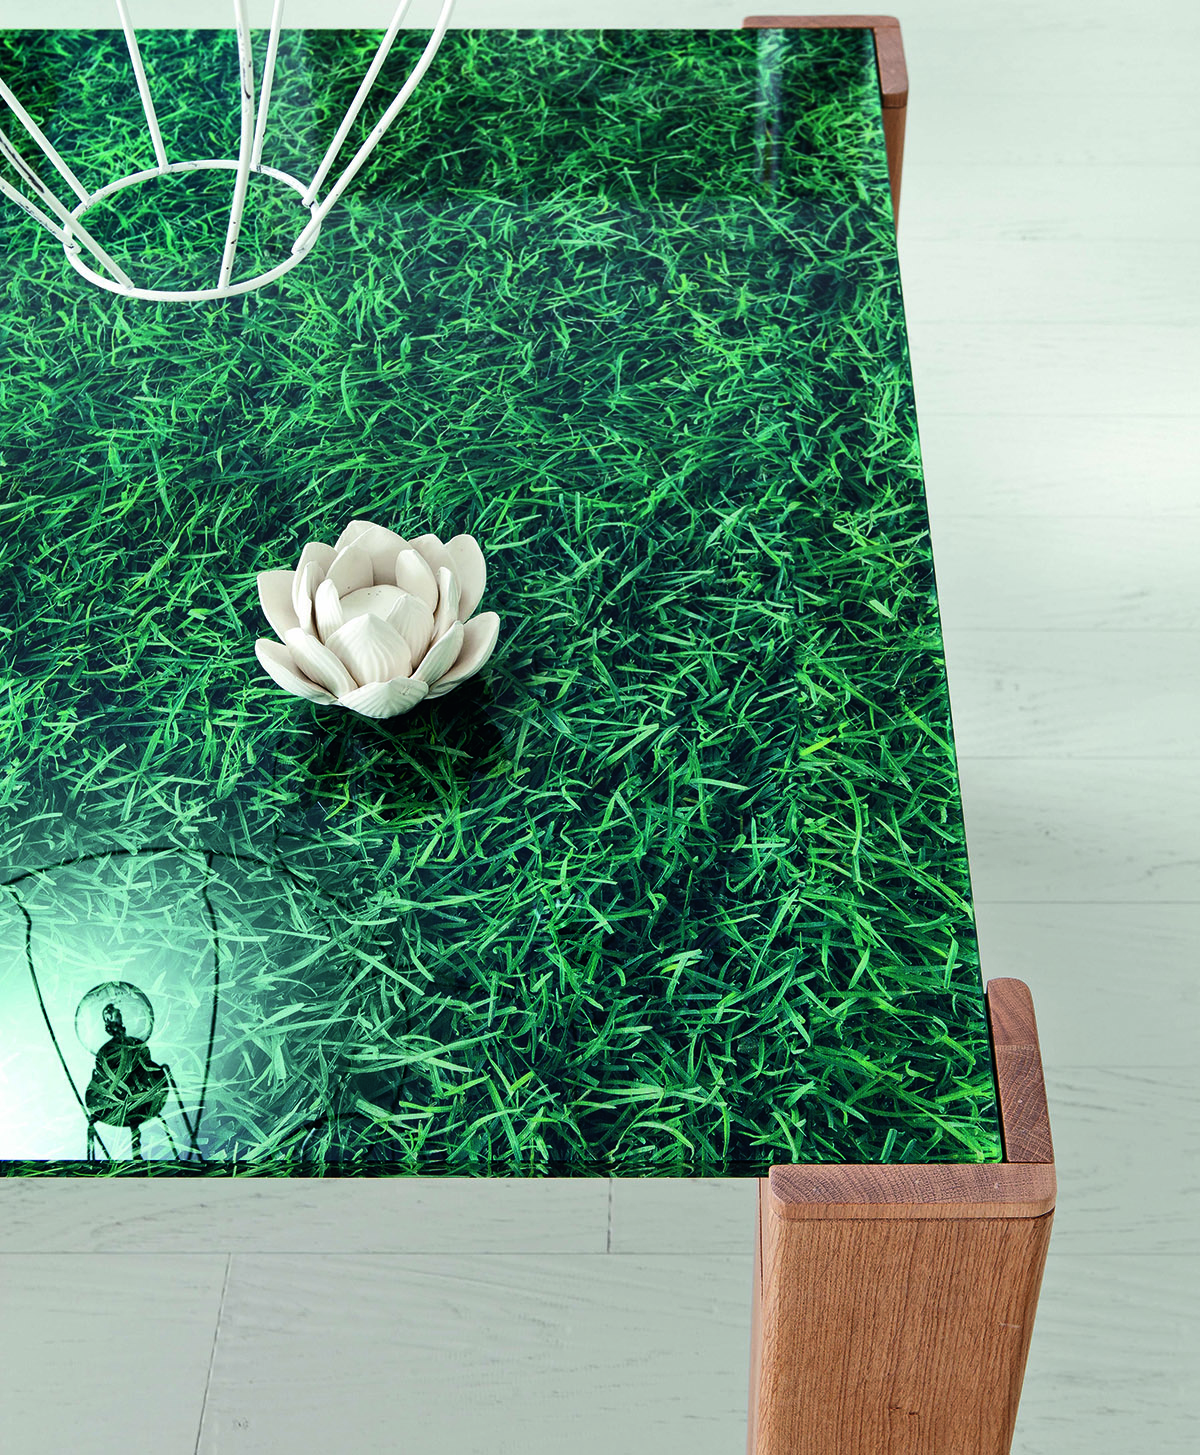 Table chêne massif sidney avec plateau en verre imprimé (gazon)